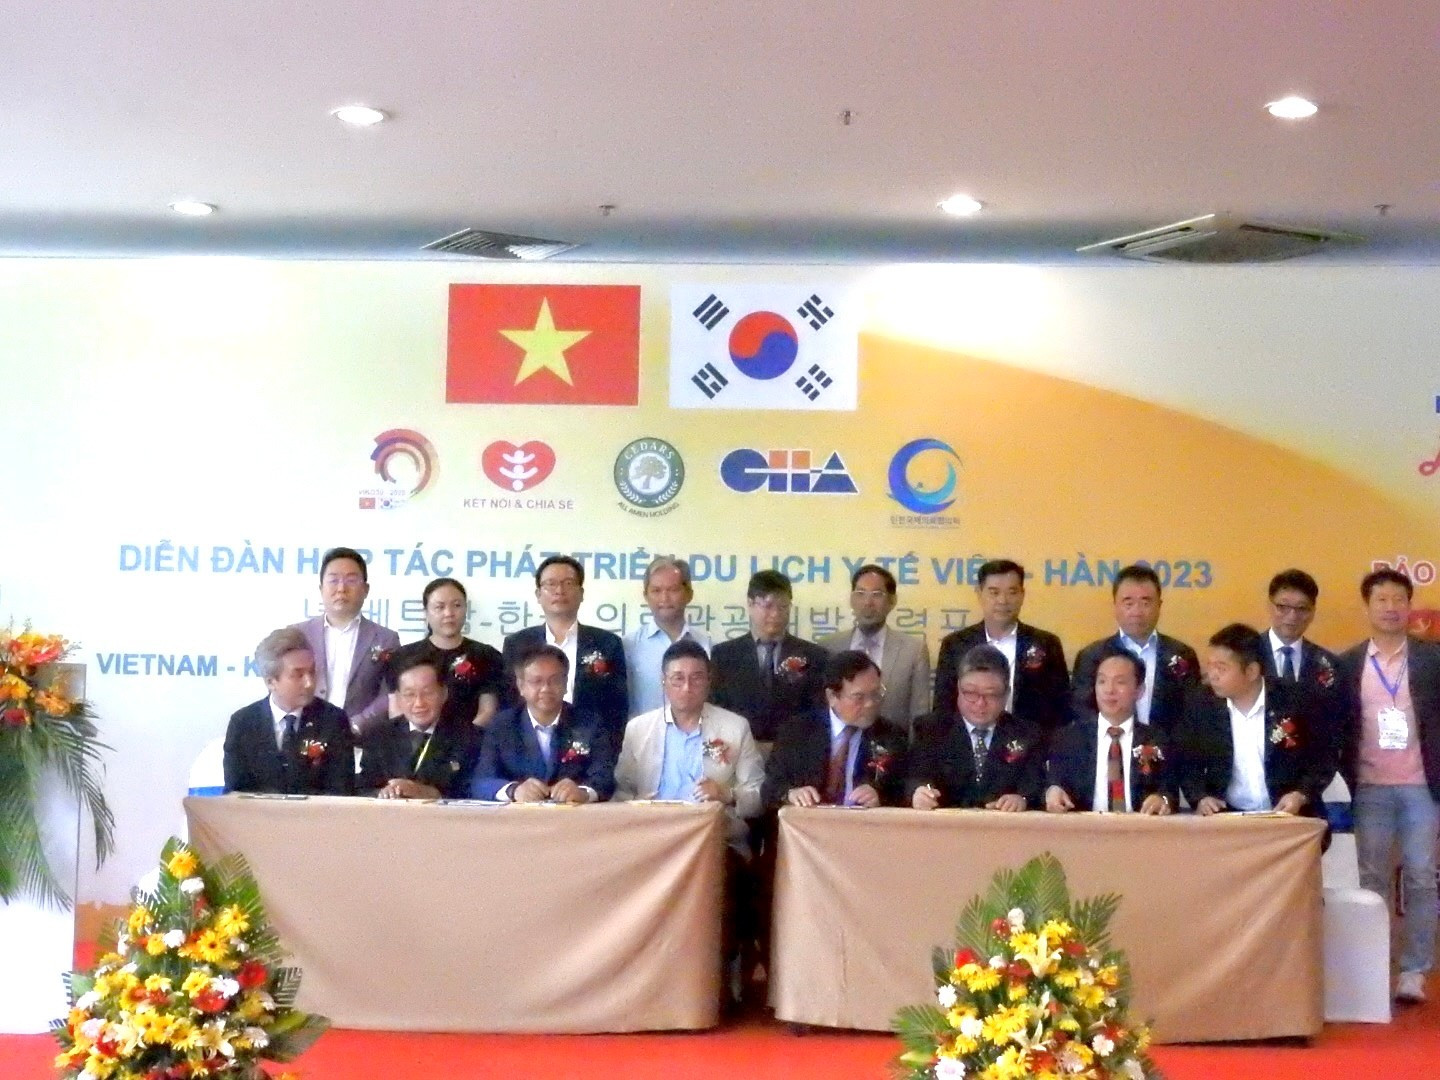 Diễn đàn hợp tác phát triển du lịch y tế Việt Nam – Hàn Quốc - 3